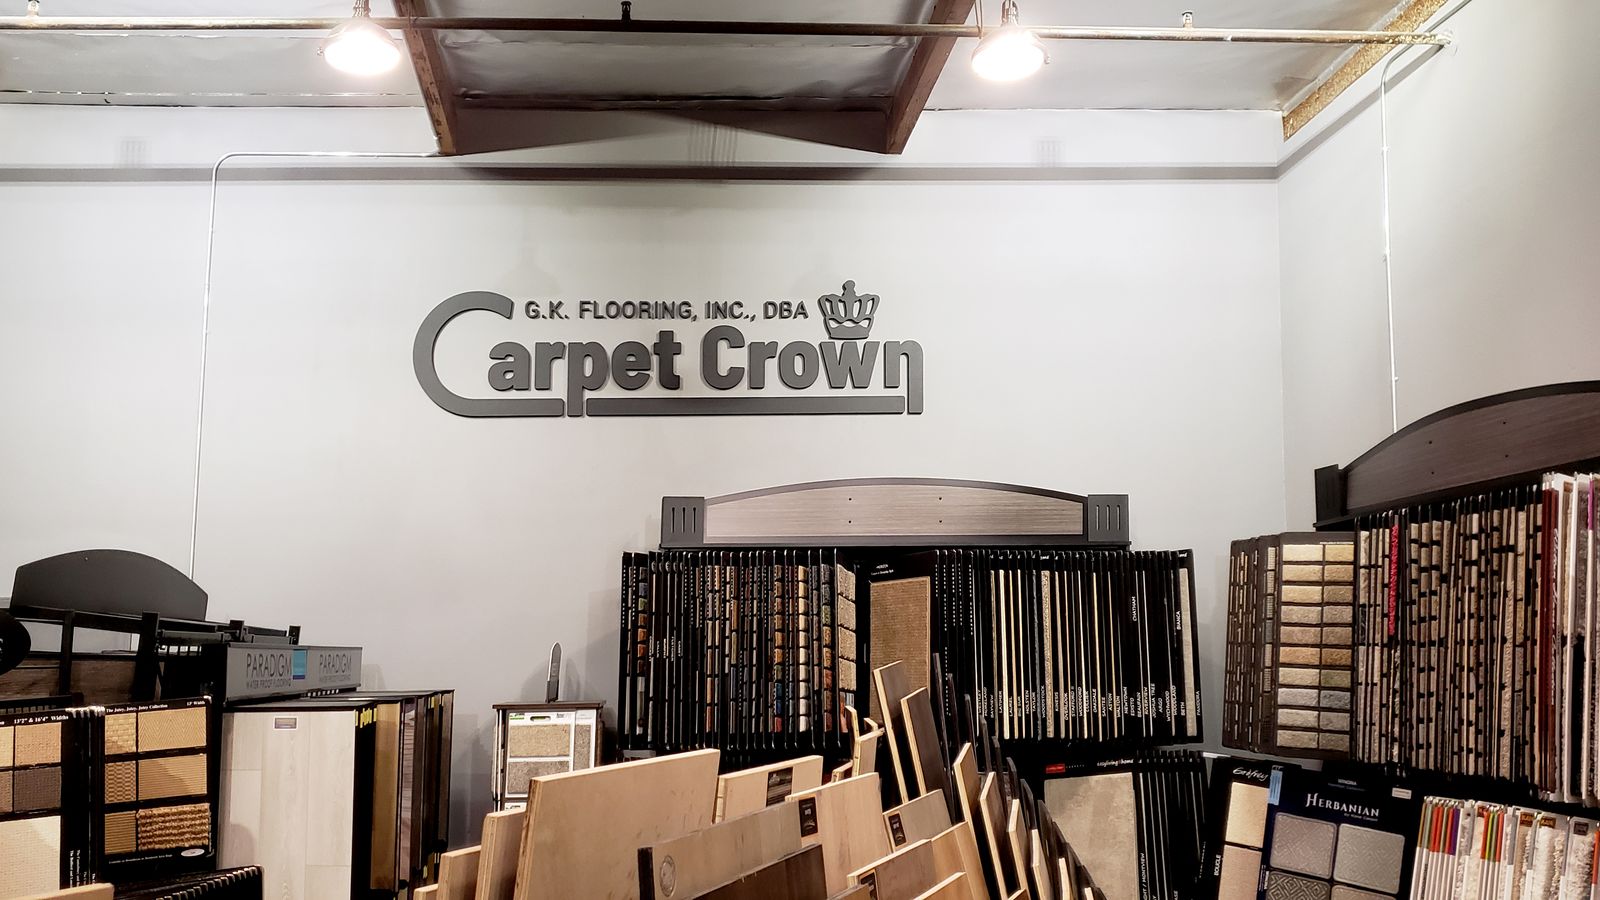 carpet crown pvc 3d letters